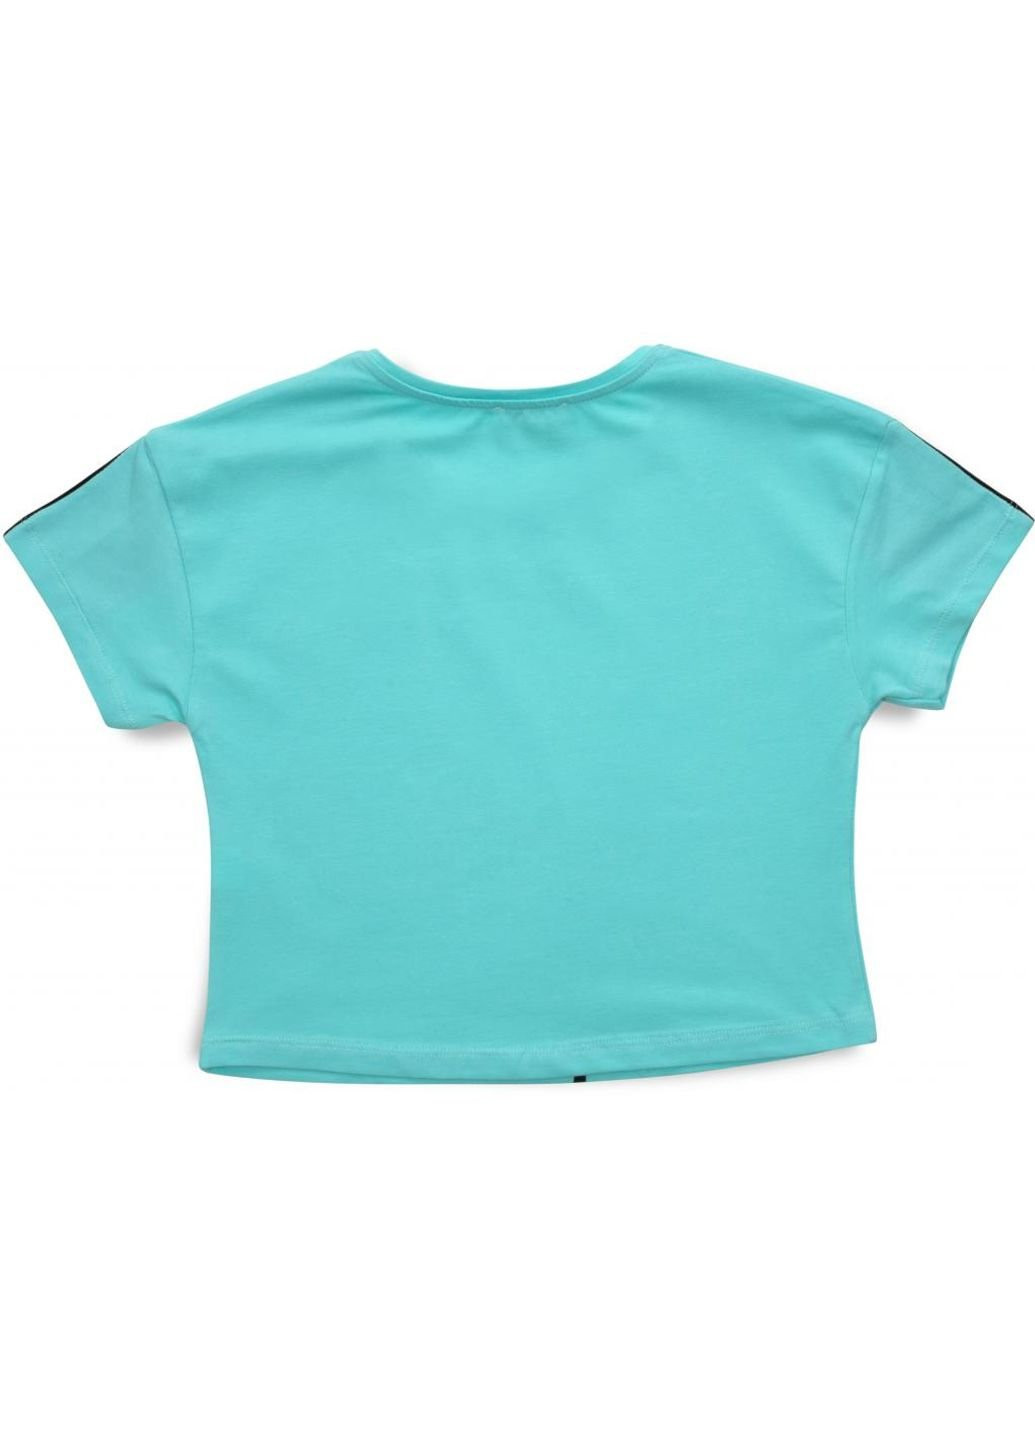 Мятная демисезонная футболка детская с мишкой (3023-152g-green) Matilda